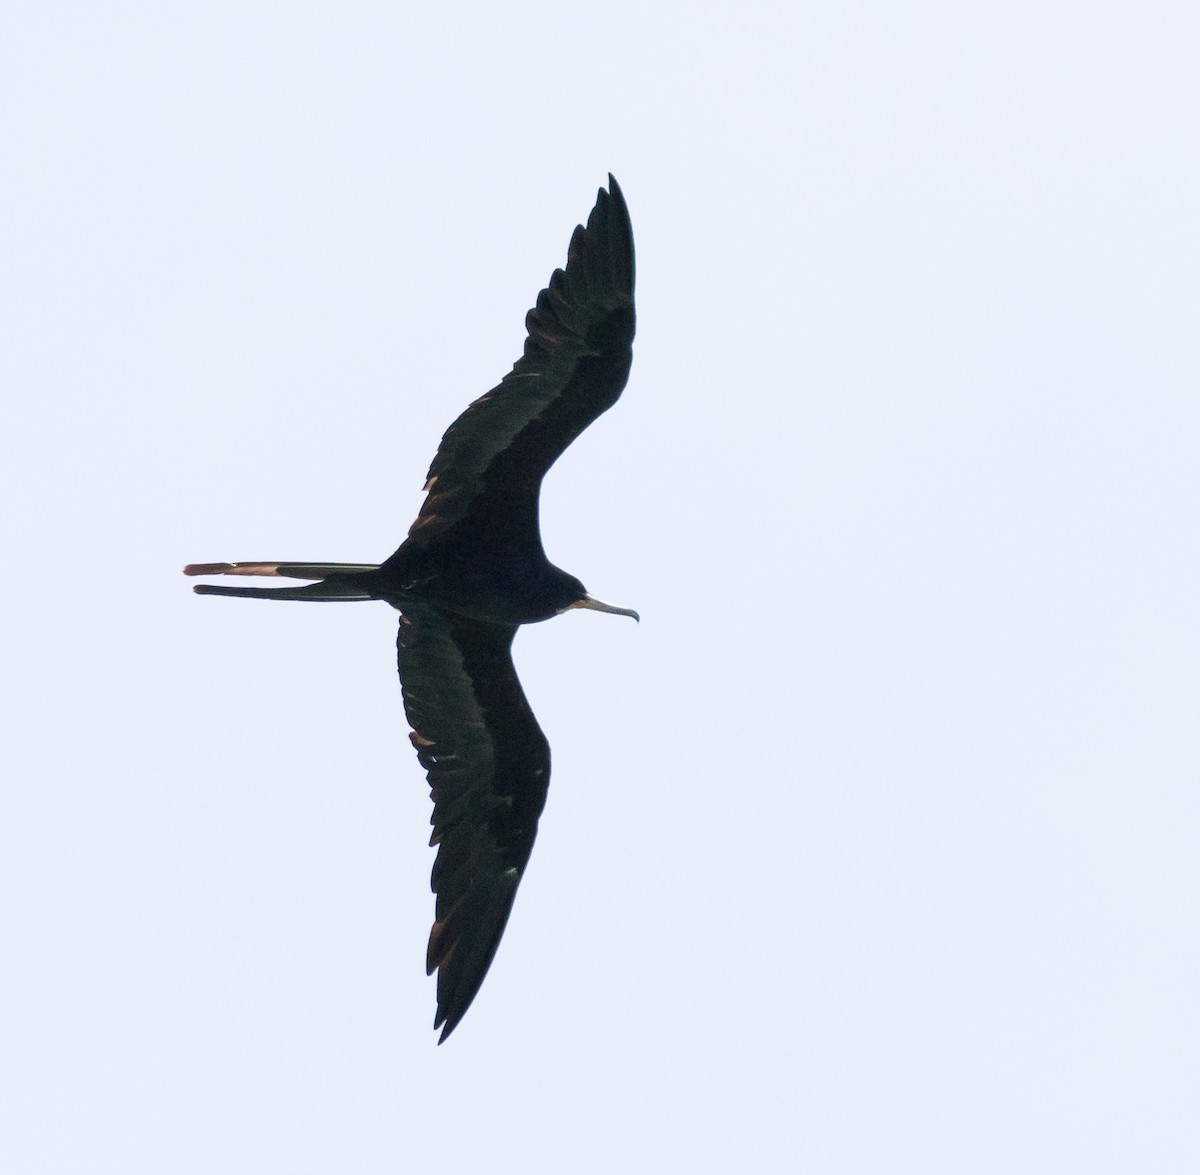 Magnificent Frigatebird - Robert Doster